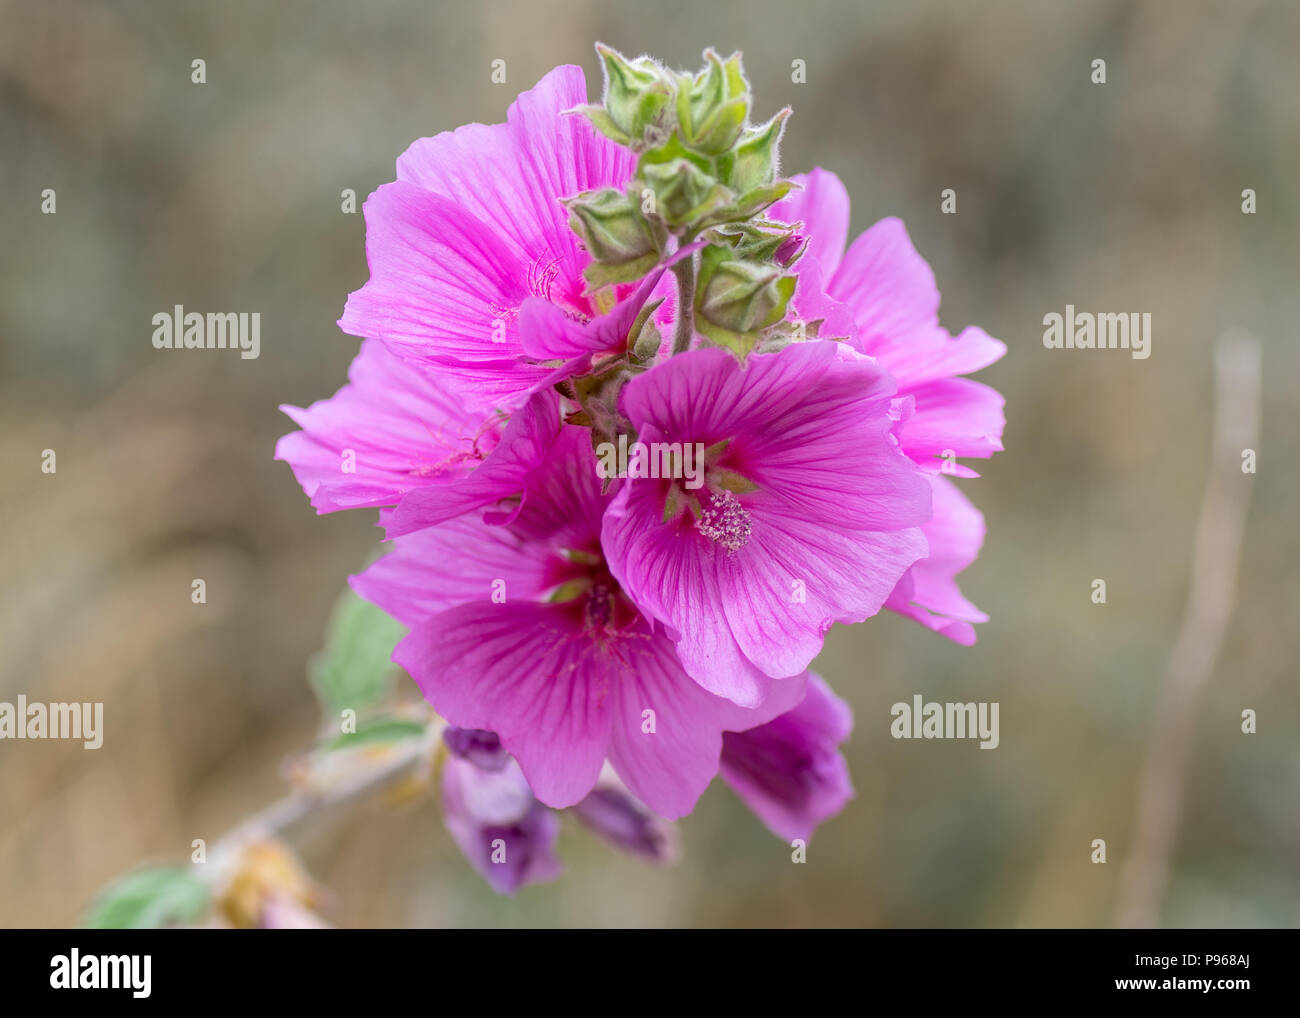 Hollyhock (Alcea rosea) flores. En la planta de Rosa malva familia (Malvaceae) muestra el detalle de los estambres Foto de stock